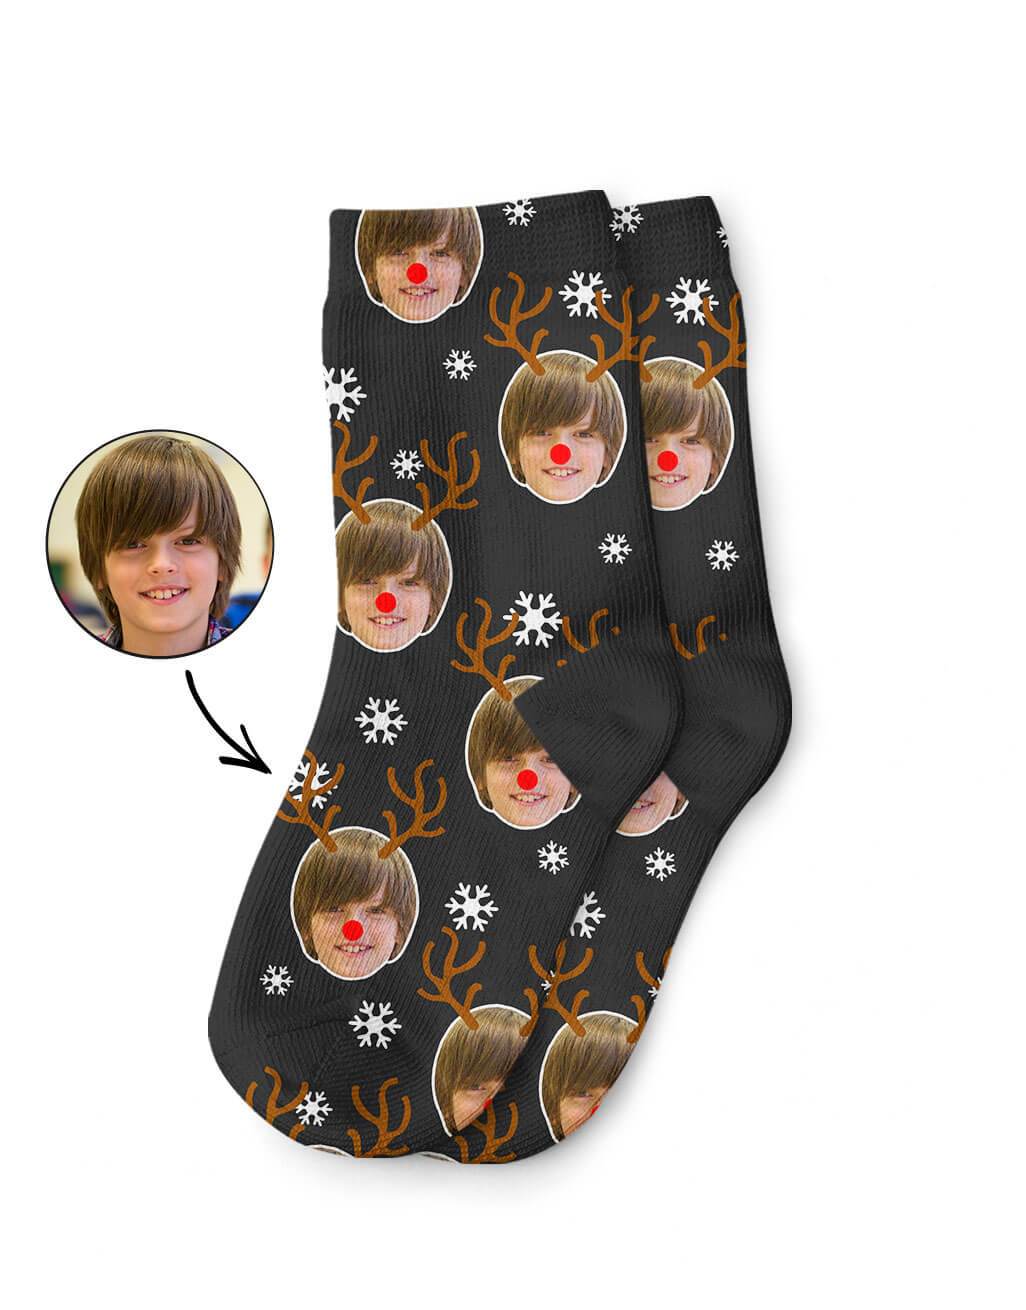 Reindeer Me Kids Socks